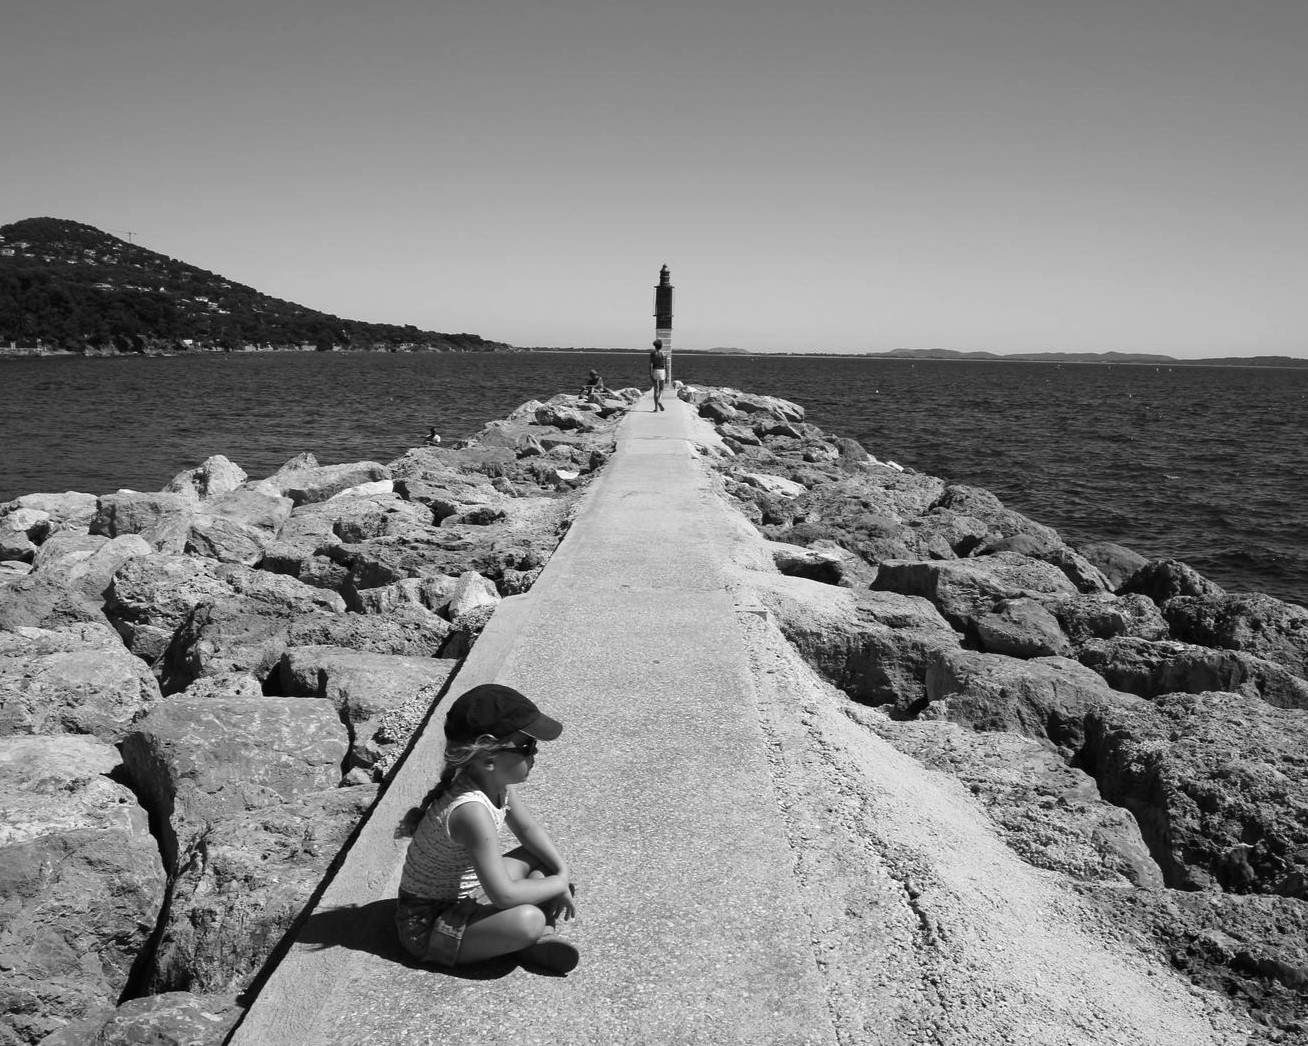 petite fille assise sur la jetée et qui regarde la mer phare au loin mer calme photo noir et blanc bnw